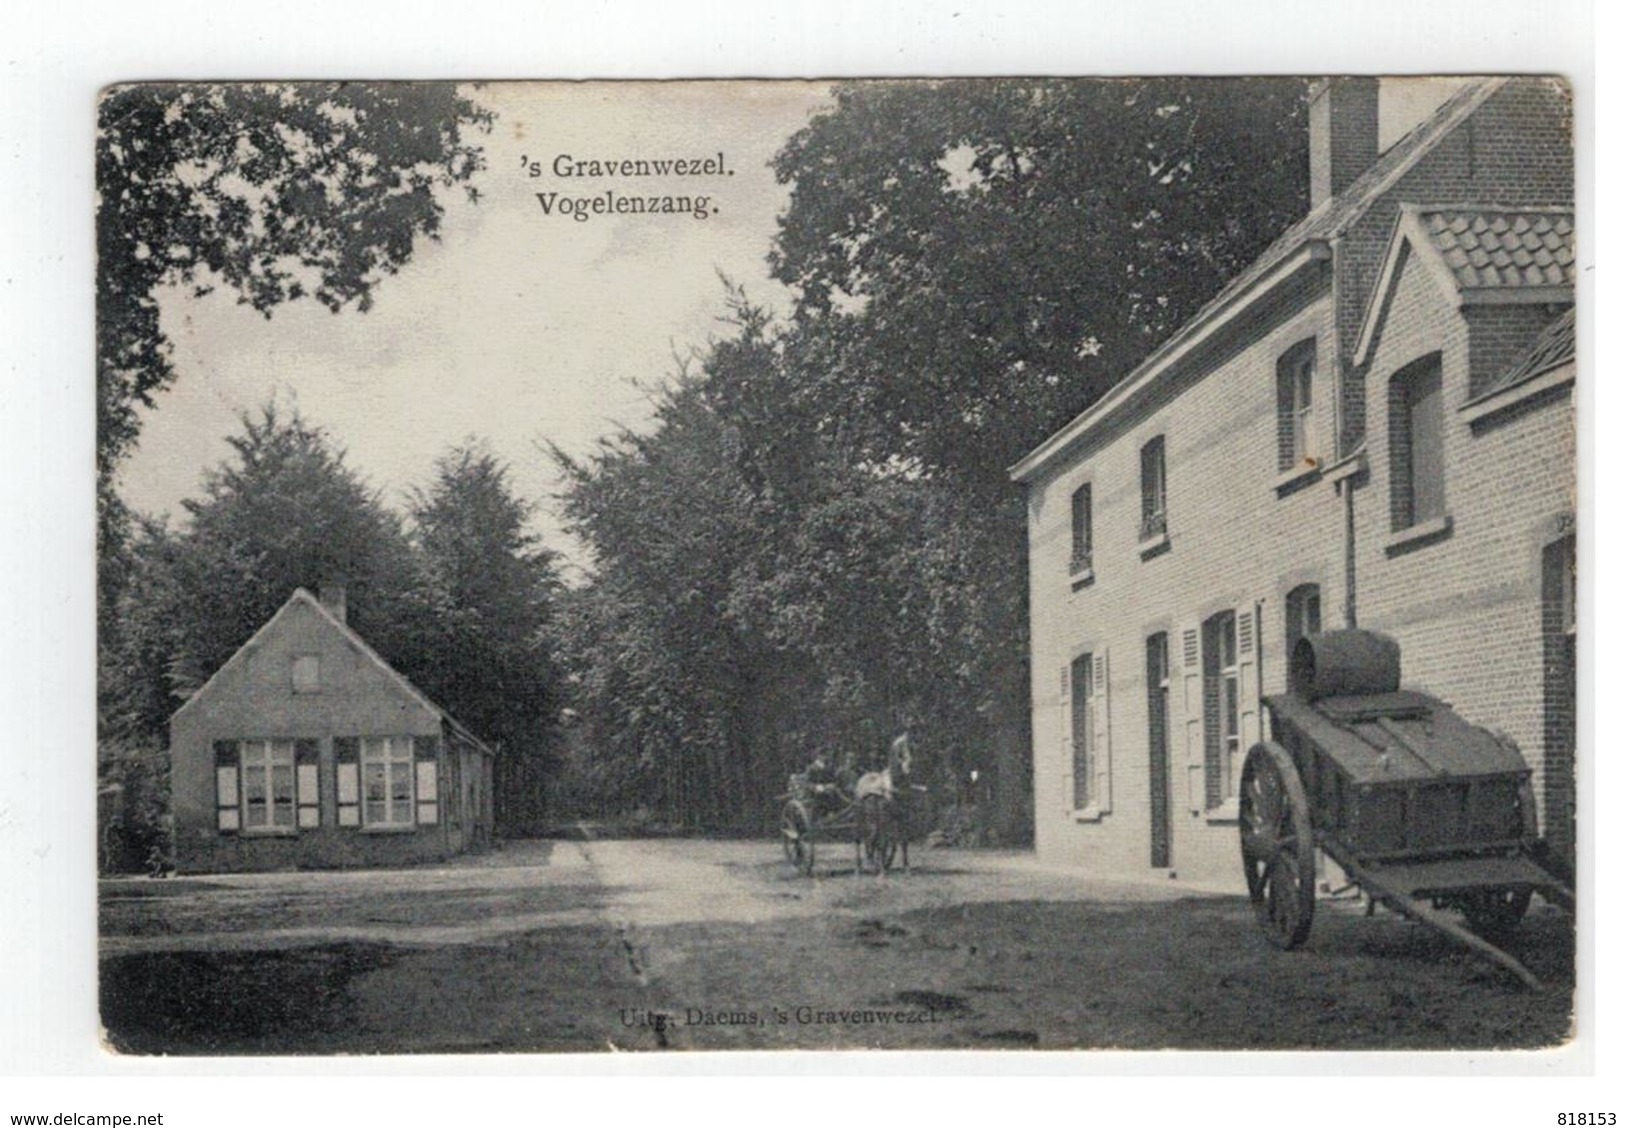 's Gravenwezel  Vogelenzang 1911  Uitg.Daems,'s Gravenwezel - Schilde